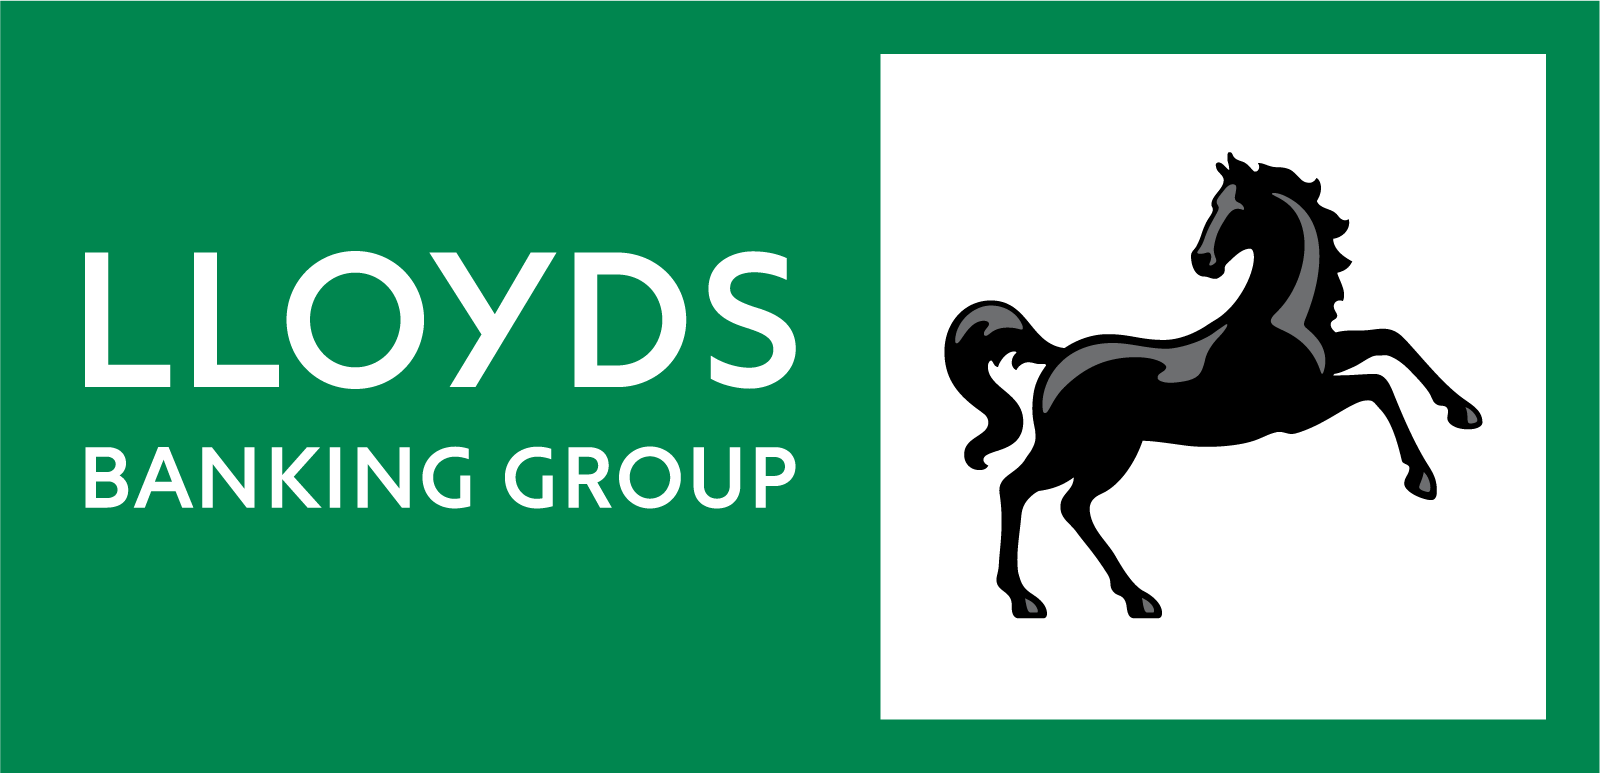 Lloyds Banking Group (Scottish Widows)